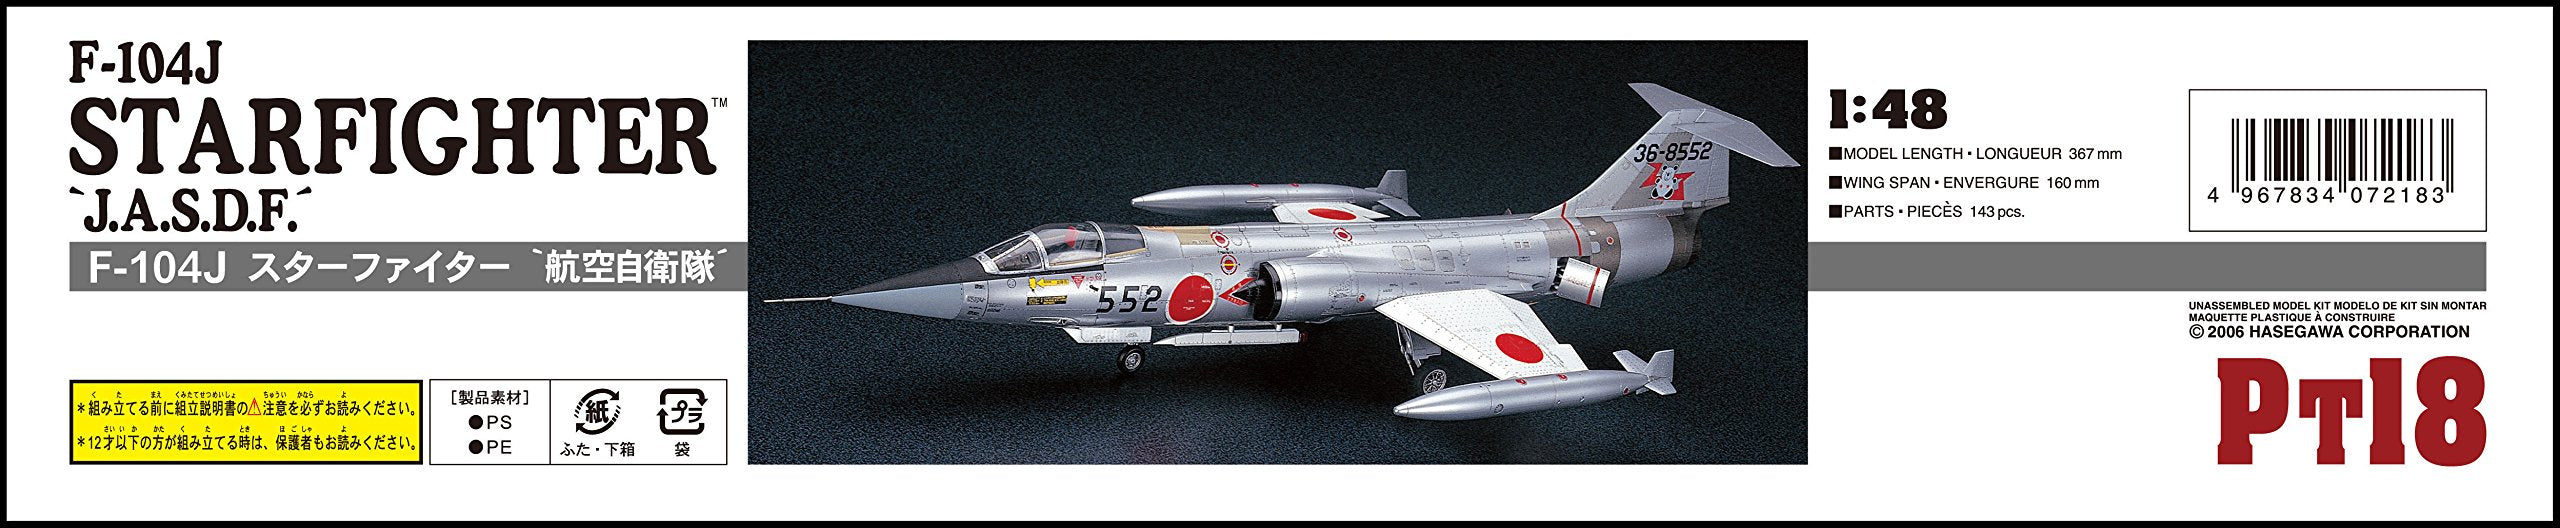 HASEGAWA 1/48 F-104J Starfighter 'J.A.S.D.F.' Plastic Model